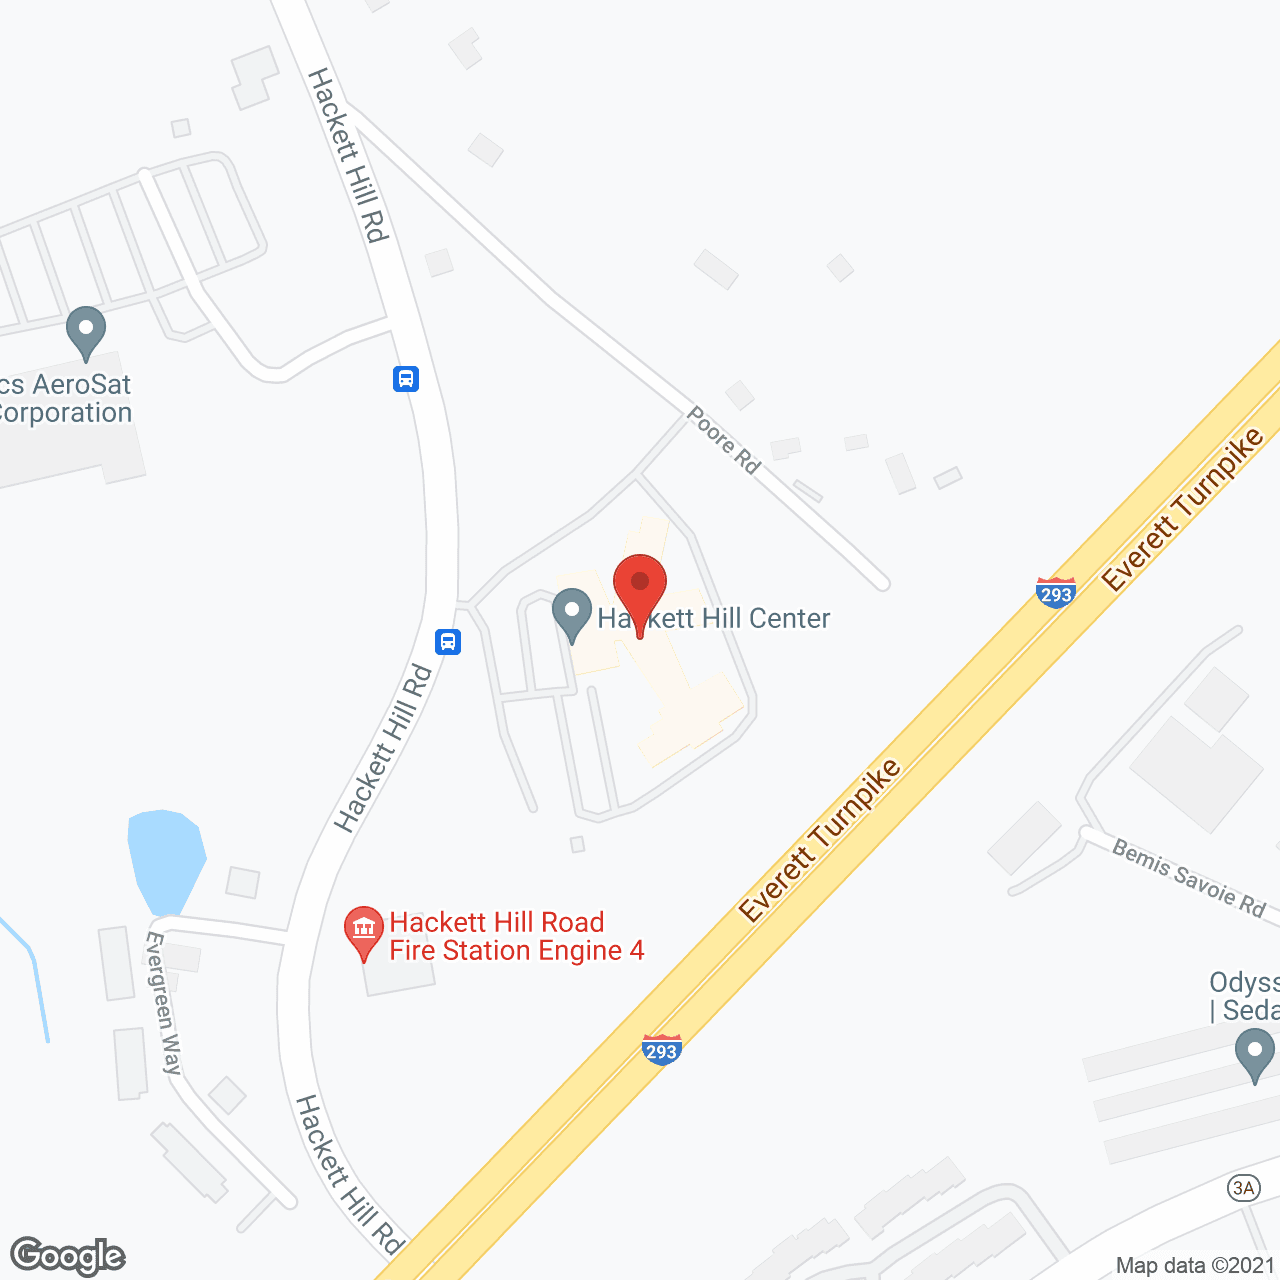 Hackett Hill Center in google map